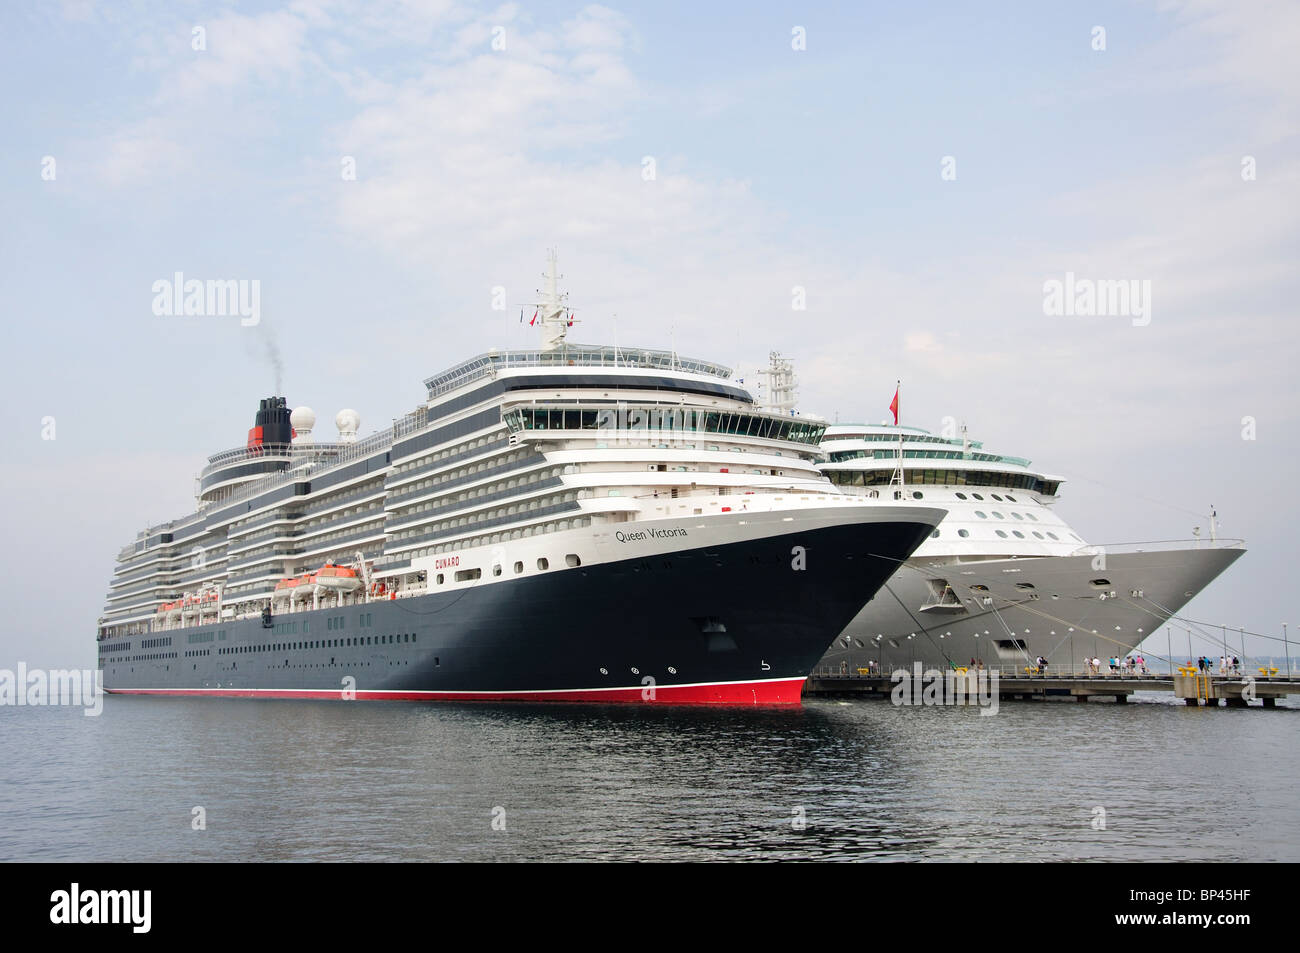 Royal Caribbean Jewel of the Seas et Cunard Queen Victoria croisière, Tallinn, Tartu County, Estonie, République d'Estonie Banque D'Images